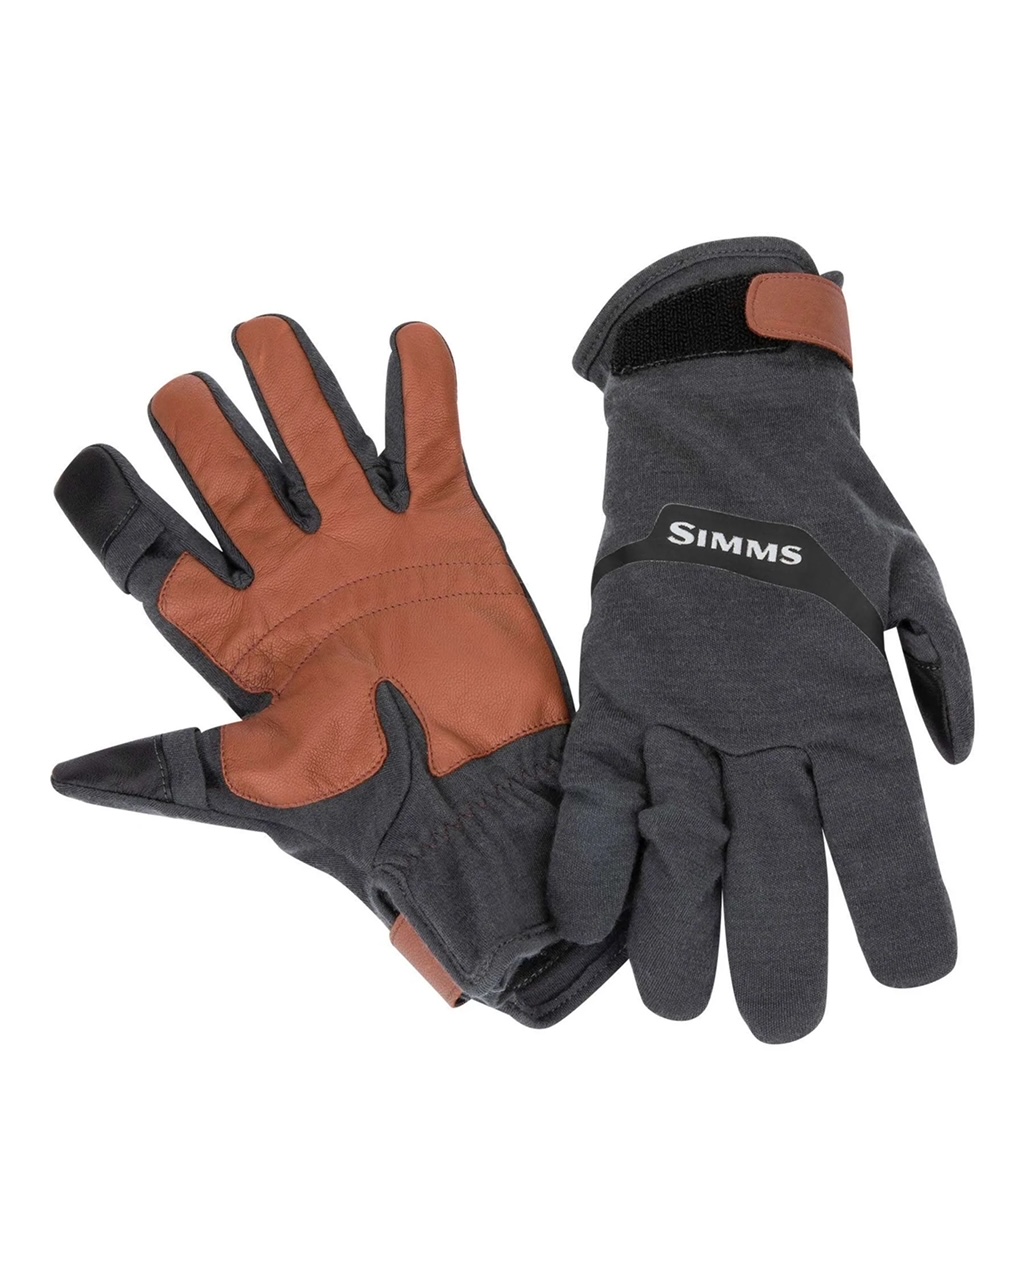 Simms Lightweight Wool Flex Glove - Medium